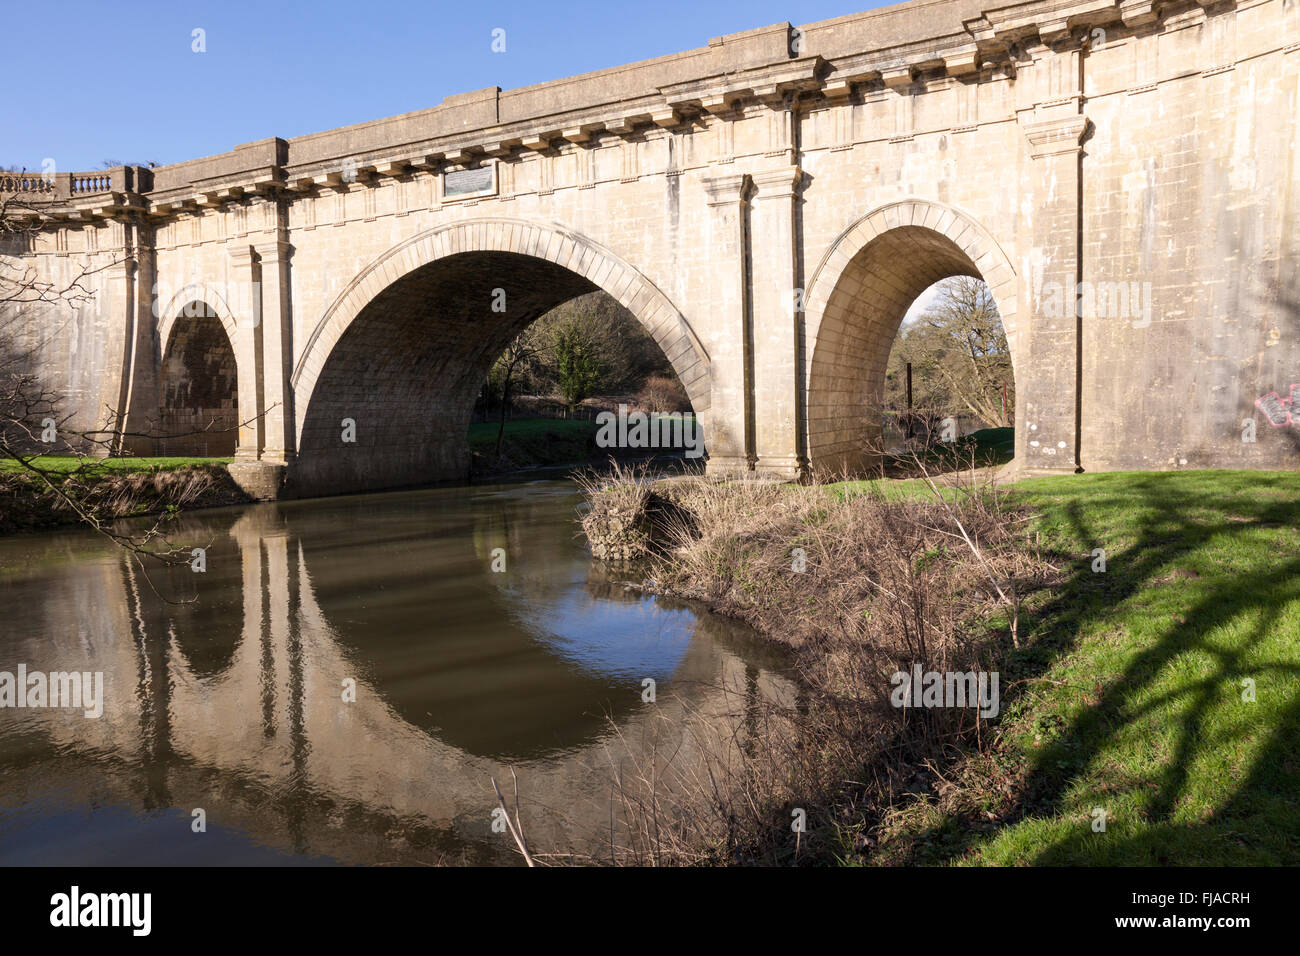 Dundas Aquädukt, erbaut von John Rennie, ein historisches Wahrzeichen in der Nähe von Bath, Somerset, England, Großbritannien. Ein Gebäude der Klasse I, das unter Denkmalschutz steht Stockfoto